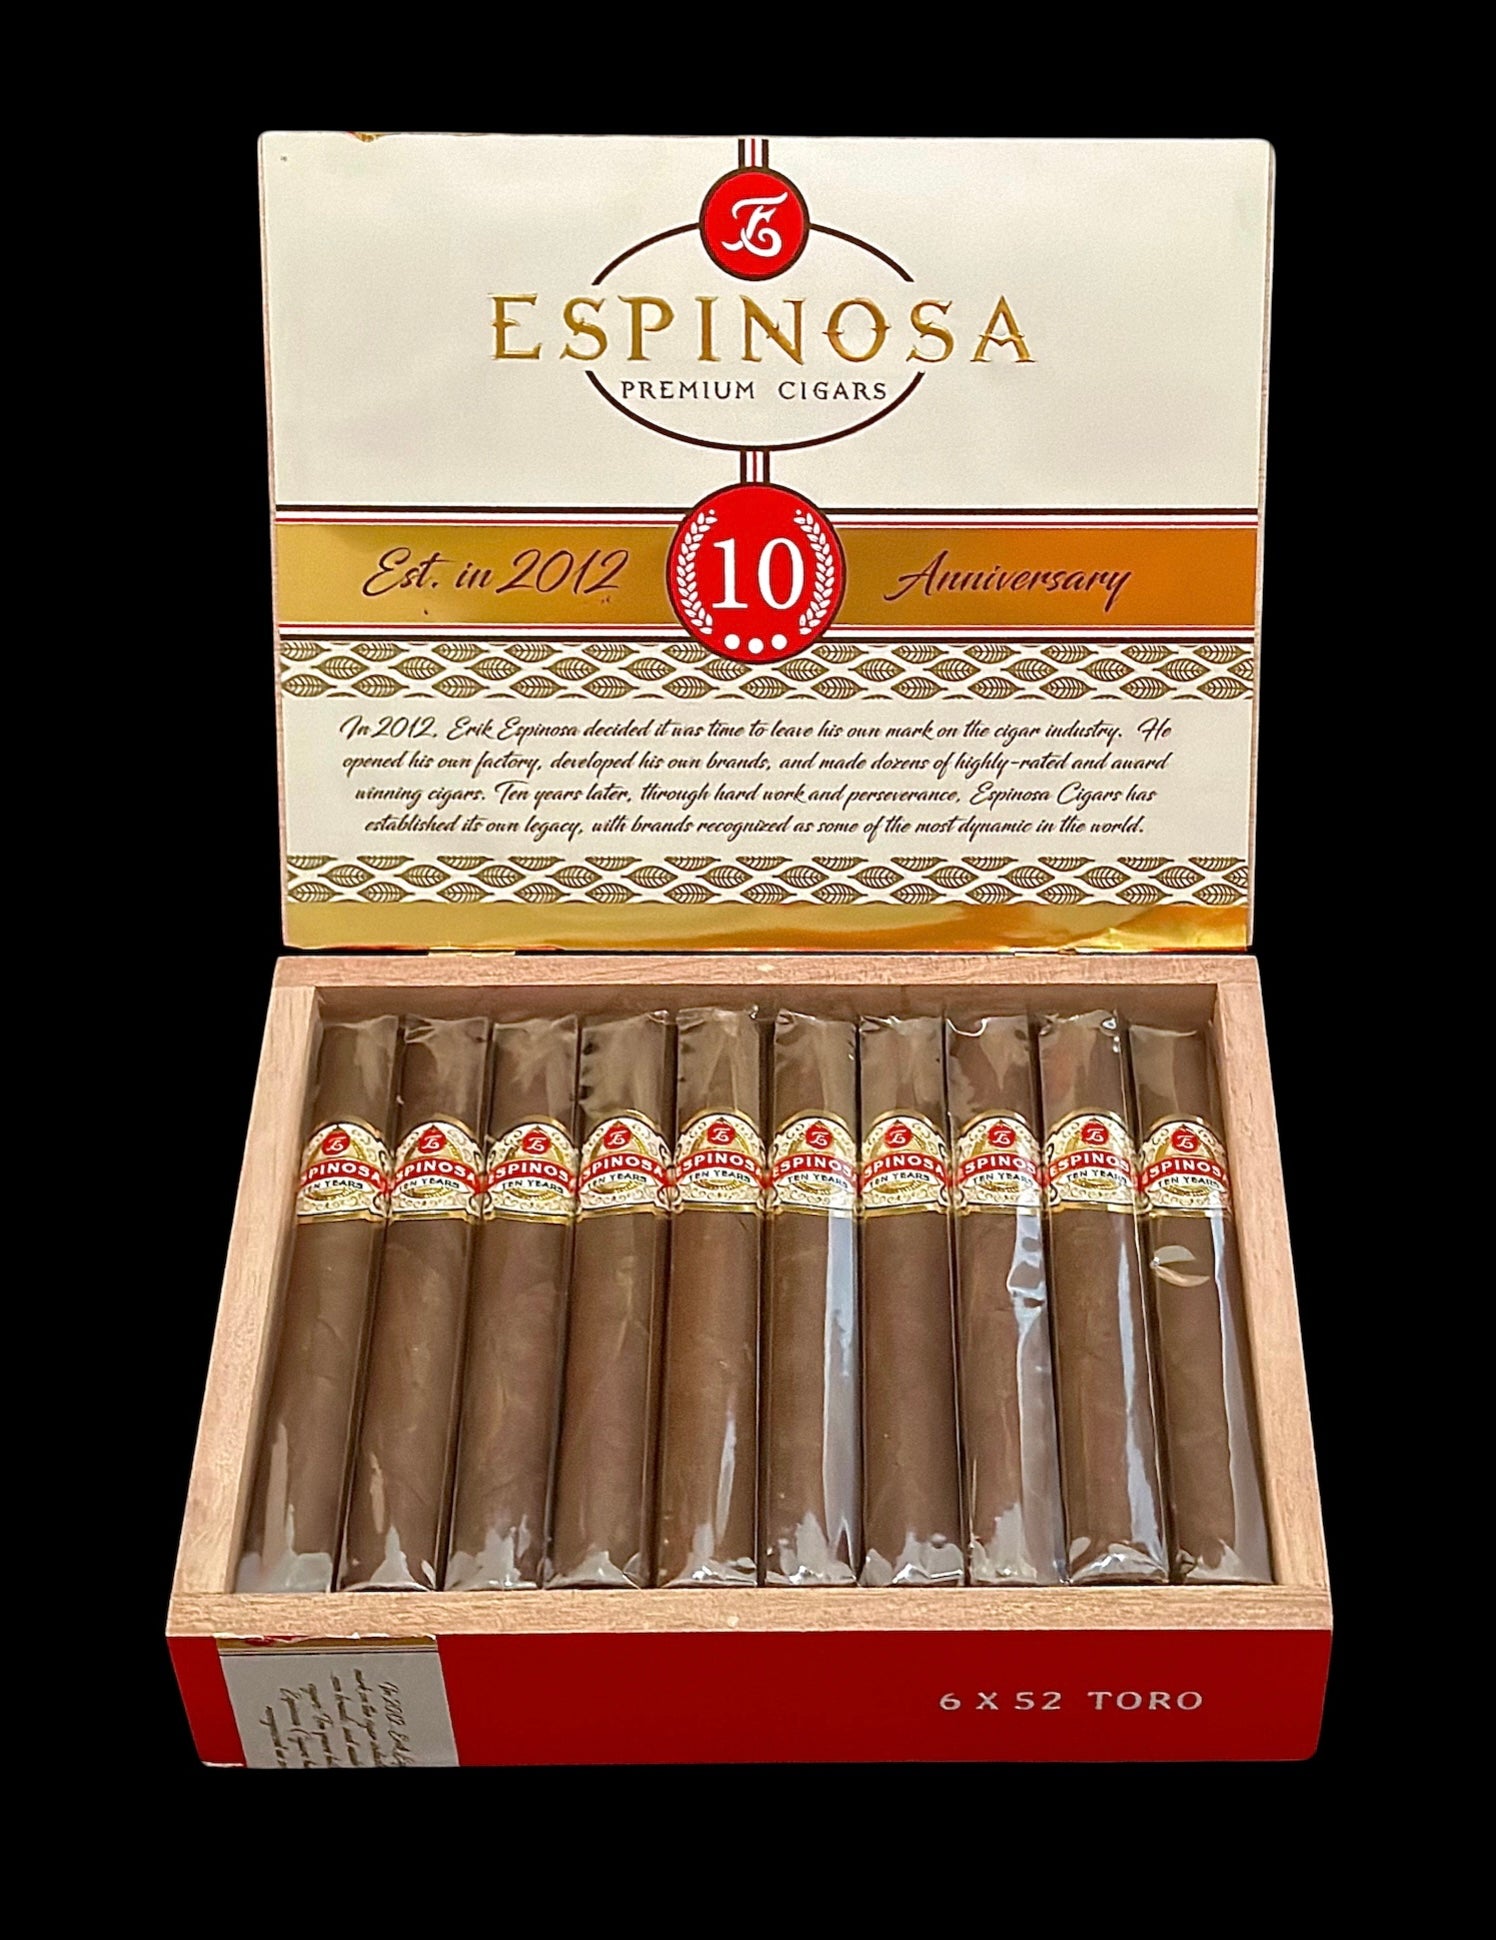 Espinosa 10 Year Anniversary